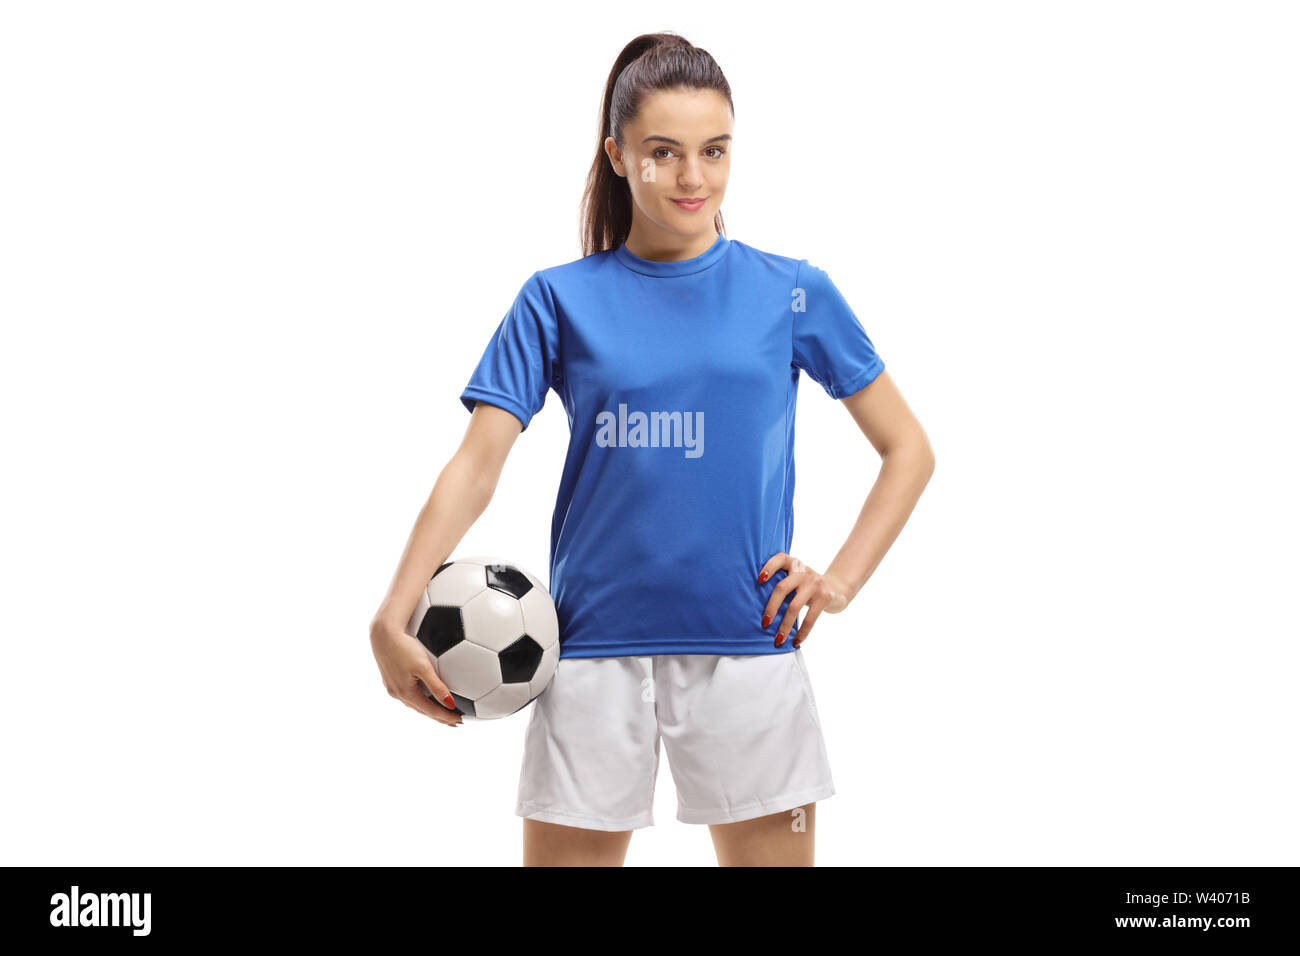 Femmina giocatore di calcio in posa con un calcio isolati su sfondo bianco Foto Stock